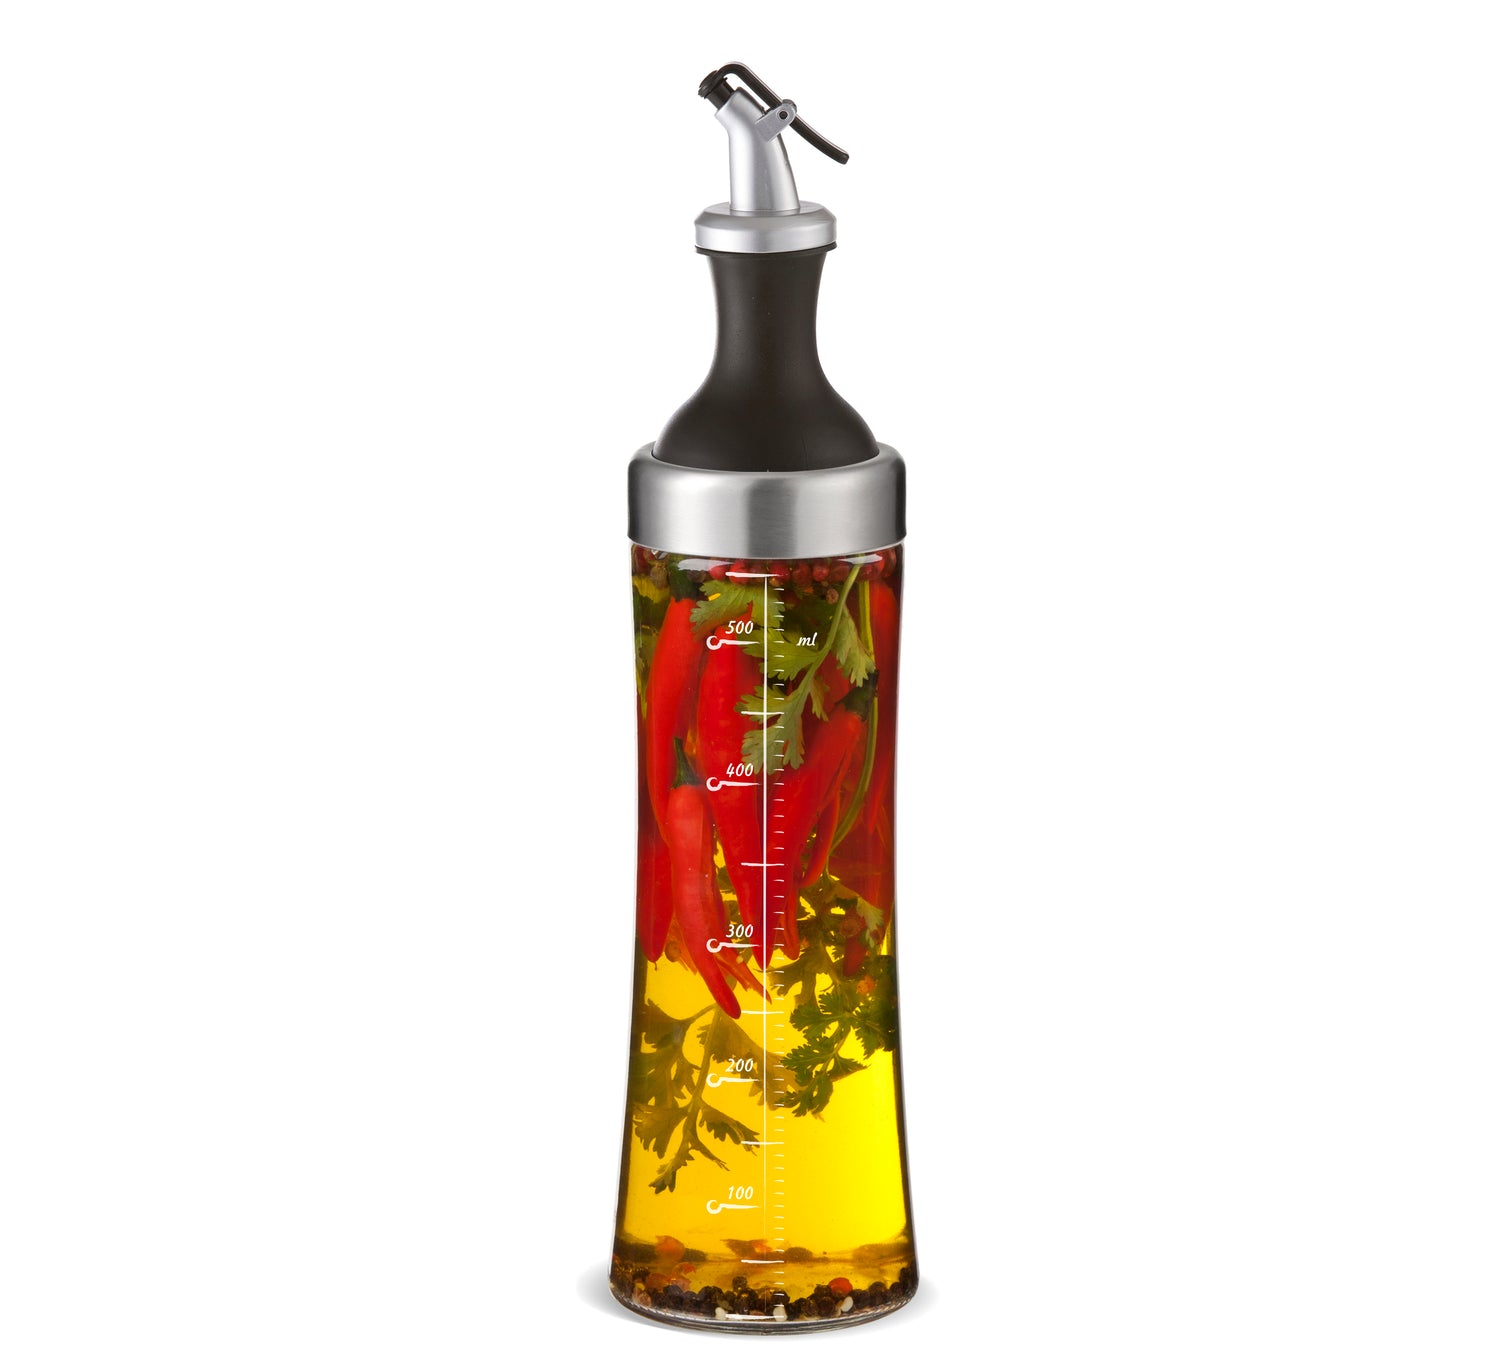 Herb oil bottle